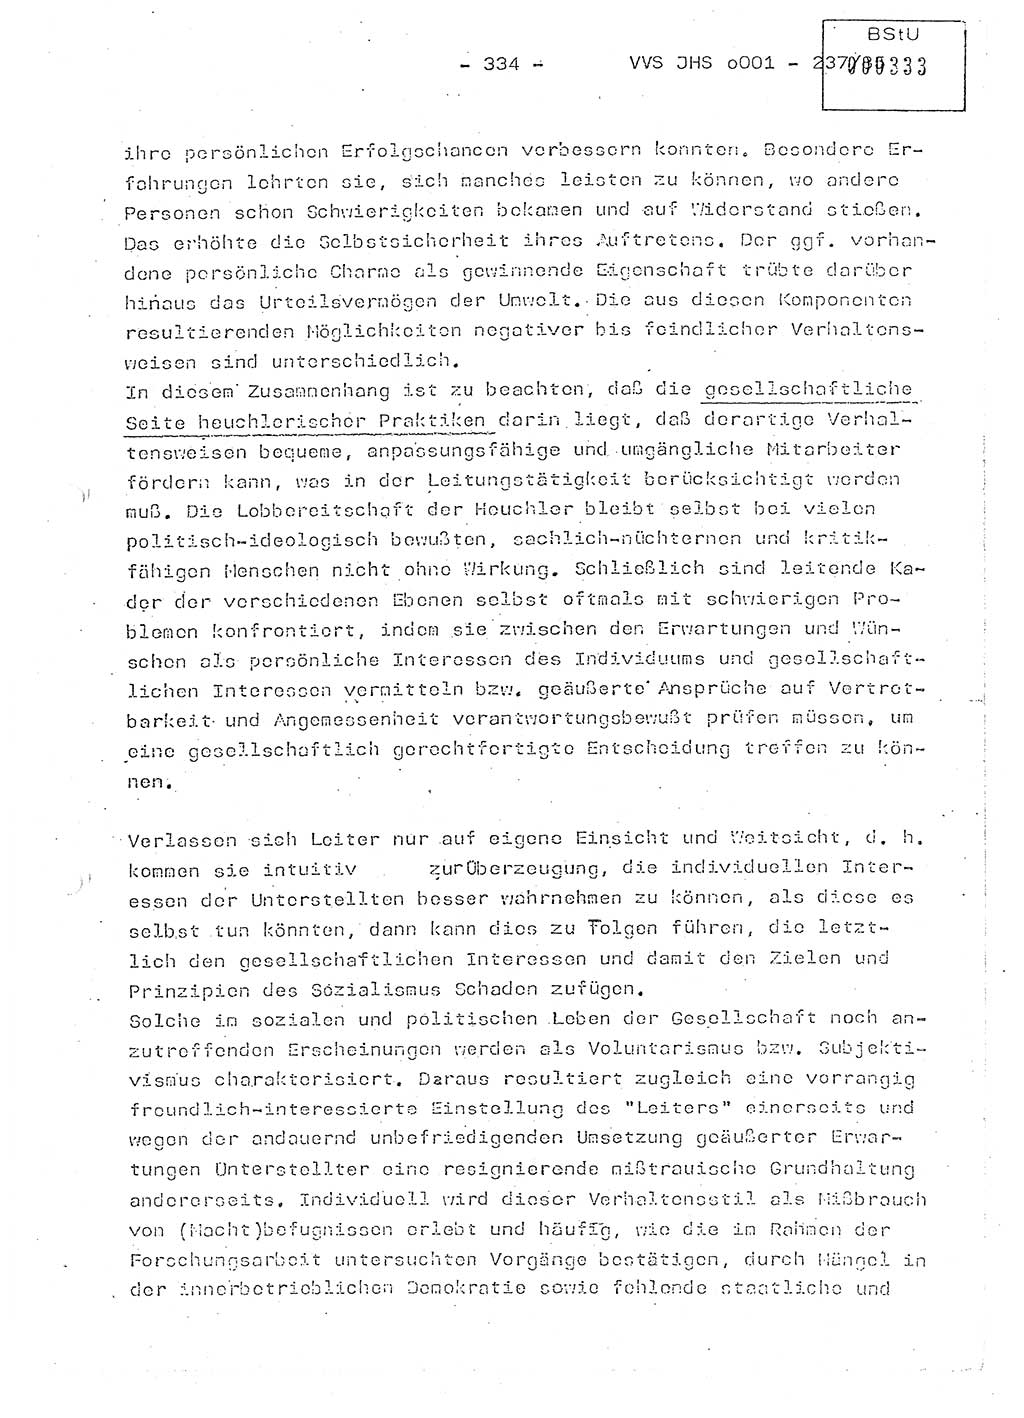 Dissertation Oberstleutnant Peter Jakulski (JHS), Oberstleutnat Christian Rudolph (HA Ⅸ), Major Horst Böttger (ZMD), Major Wolfgang Grüneberg (JHS), Major Albert Meutsch (JHS), Ministerium für Staatssicherheit (MfS) [Deutsche Demokratische Republik (DDR)], Juristische Hochschule (JHS), Vertrauliche Verschlußsache (VVS) o001-237/85, Potsdam 1985, Seite 334 (Diss. MfS DDR JHS VVS o001-237/85 1985, S. 334)